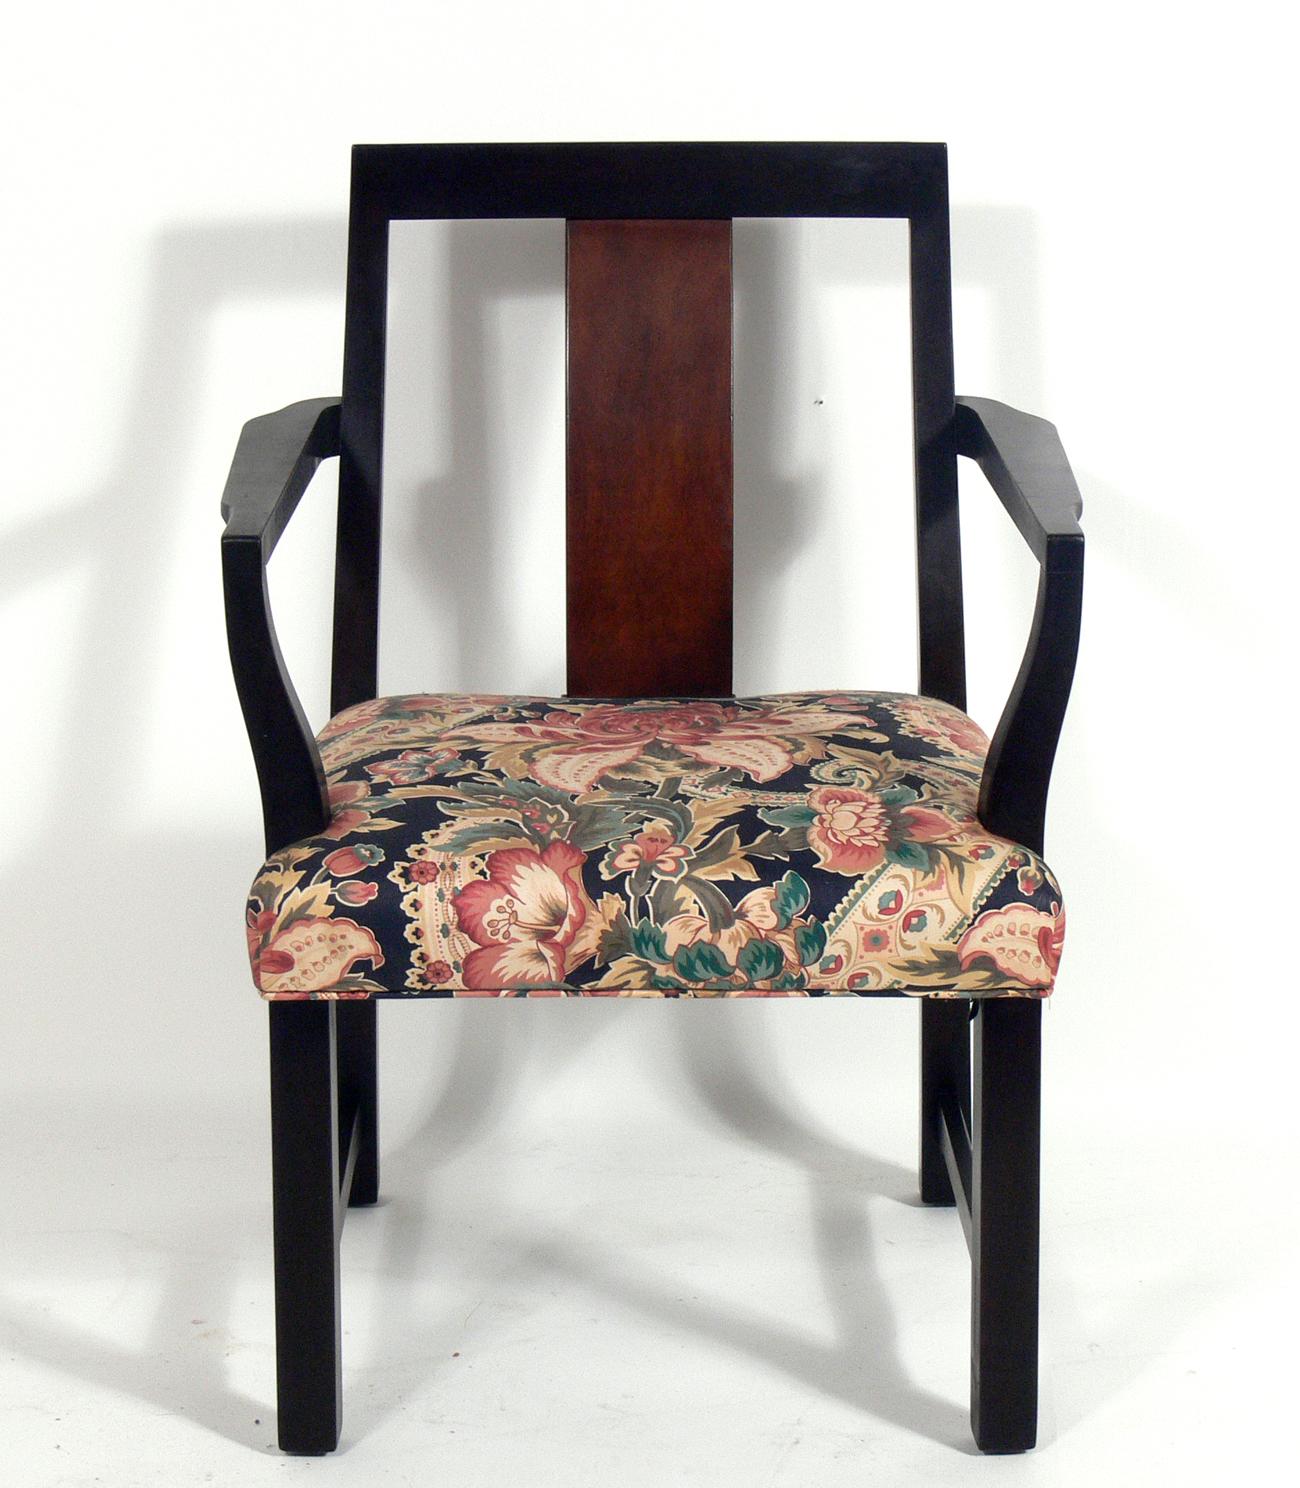 Ensemble de six chaises de salle à manger, conçu par Edward Wormley pour Dunbar, américain, vers les années 1950. Une forme moderne et élégante avec une subtile influence asiatique dans le design. L'ensemble se compose de deux fauteuils et de quatre